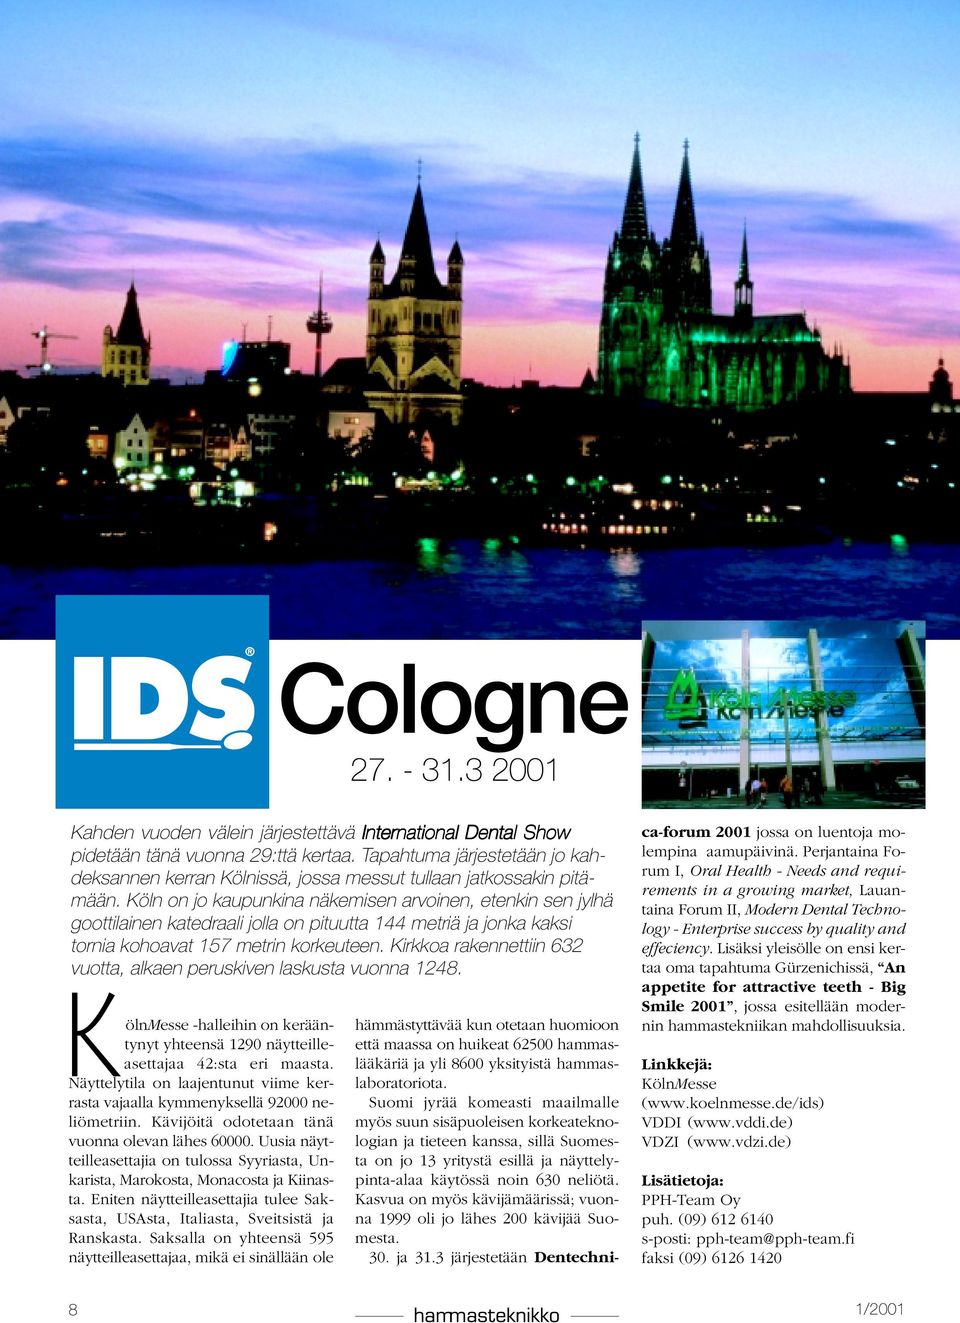 Köln on jo kaupunkina näkemisen arvoinen, etenkin sen jylhä goottilainen katedraali jolla on pituutta 144 metriä ja jonka kaksi tornia kohoavat 157 metrin korkeuteen.